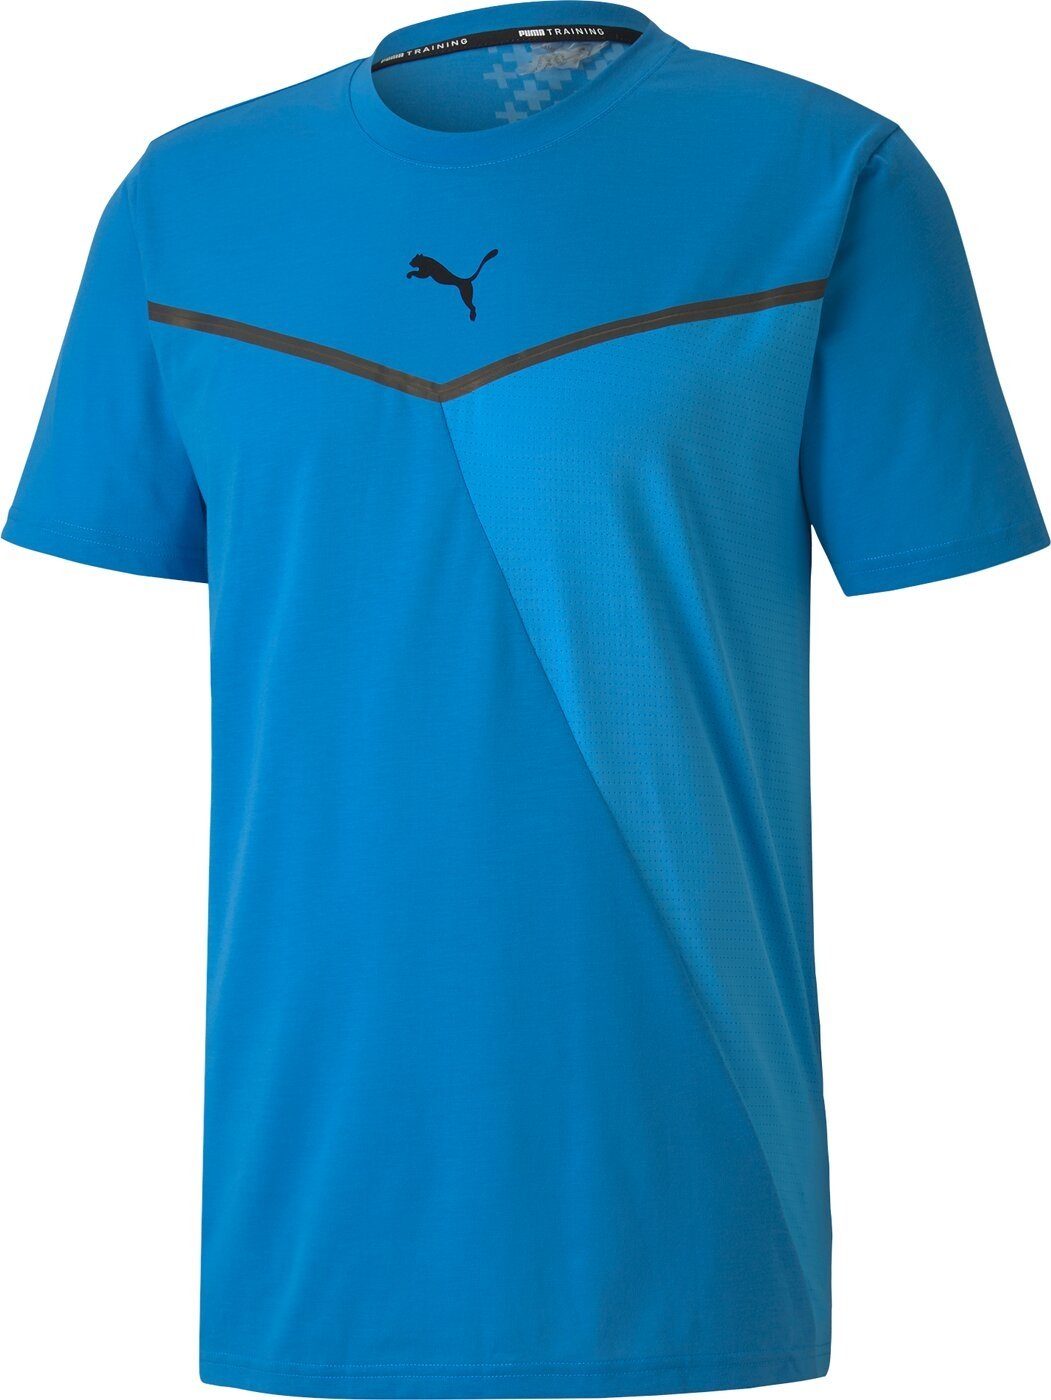 SHORT 003 T-Shirt NRGY TRAIN Puma Tec BLUE BND R THERMO